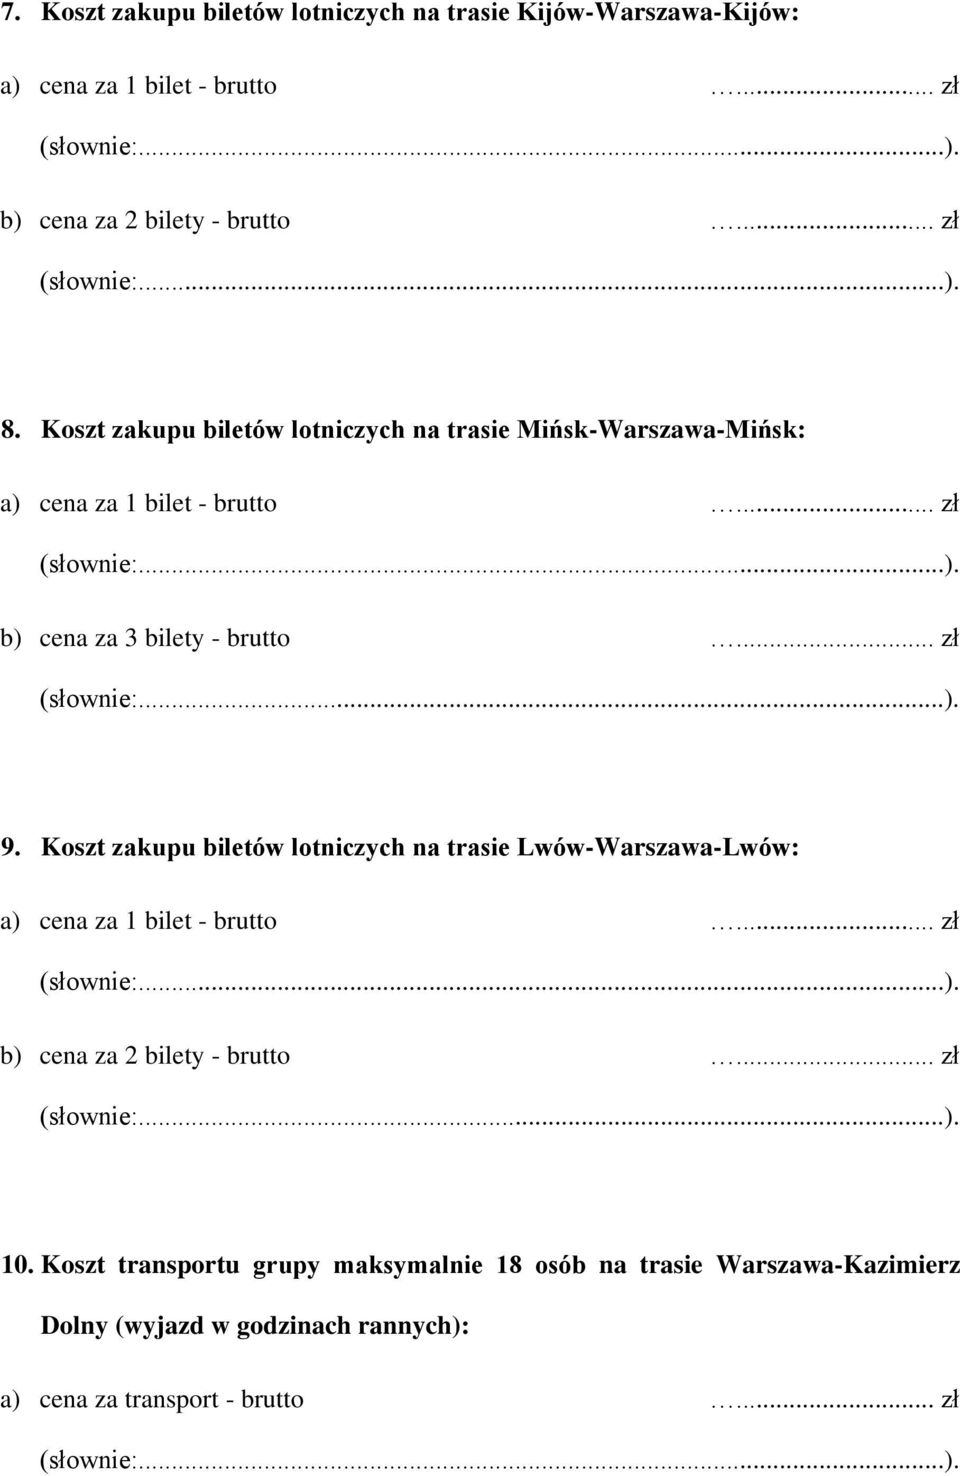 Koszt zakupu biletów lotniczych na trasie Lwów-Warszawa-Lwów: a) cena za 1 bilet - brutto... zł b) cena za 2 bilety - brutto... zł 10.